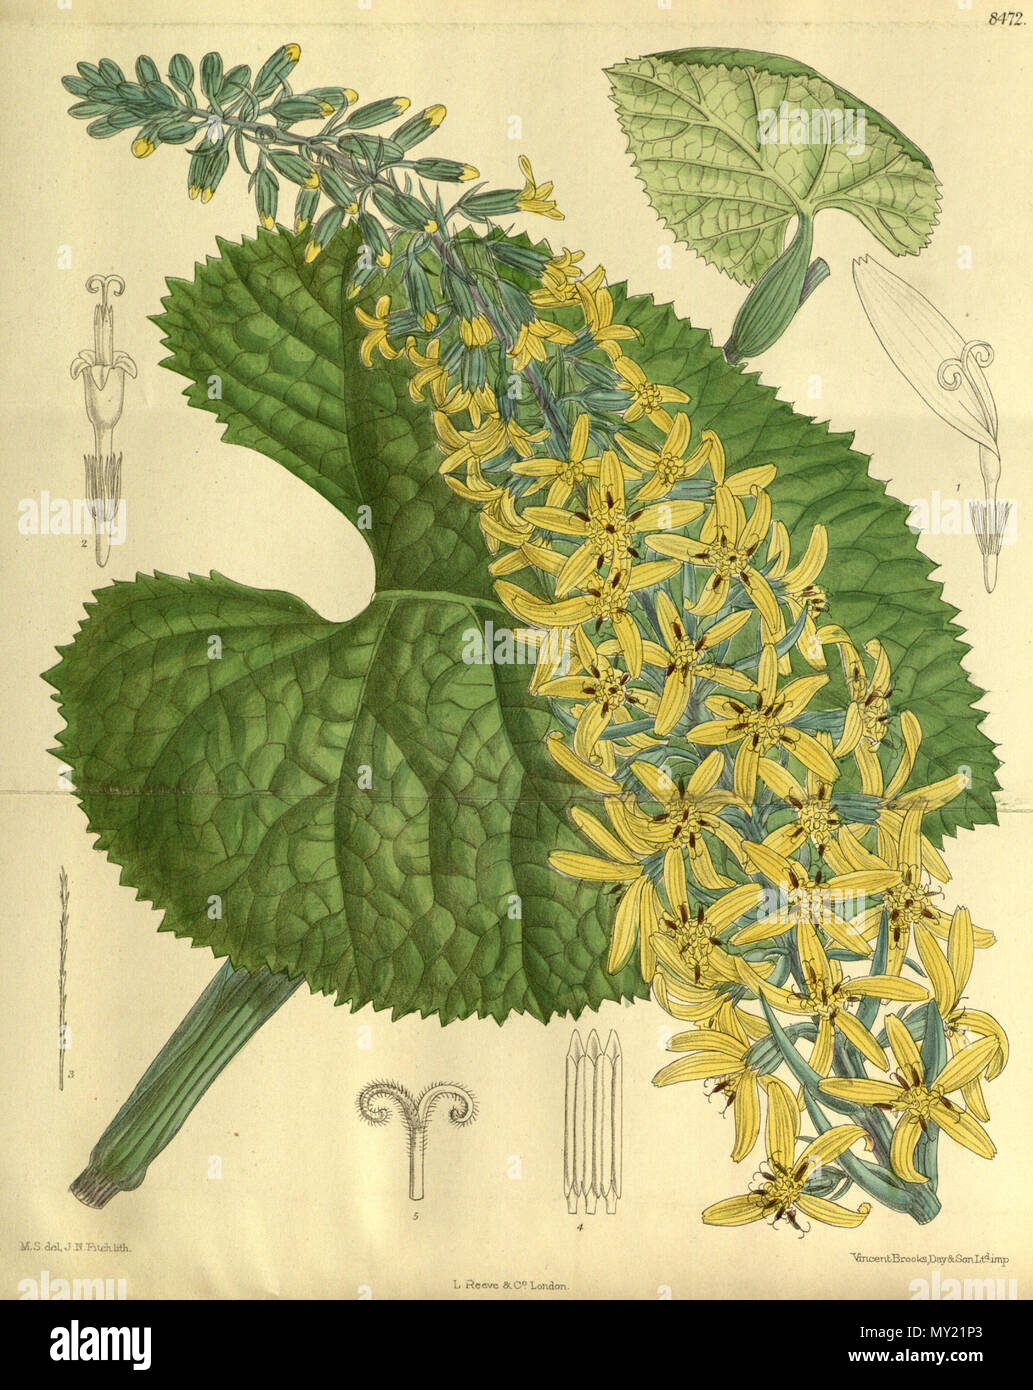 . Senecio stenocephalus (= Ligularia stenocephala), Asteraceae . 1913. M.S. del, J.N.Fitch, lith. 481 Senecio stenocephalus 139-8472 Stock Photo